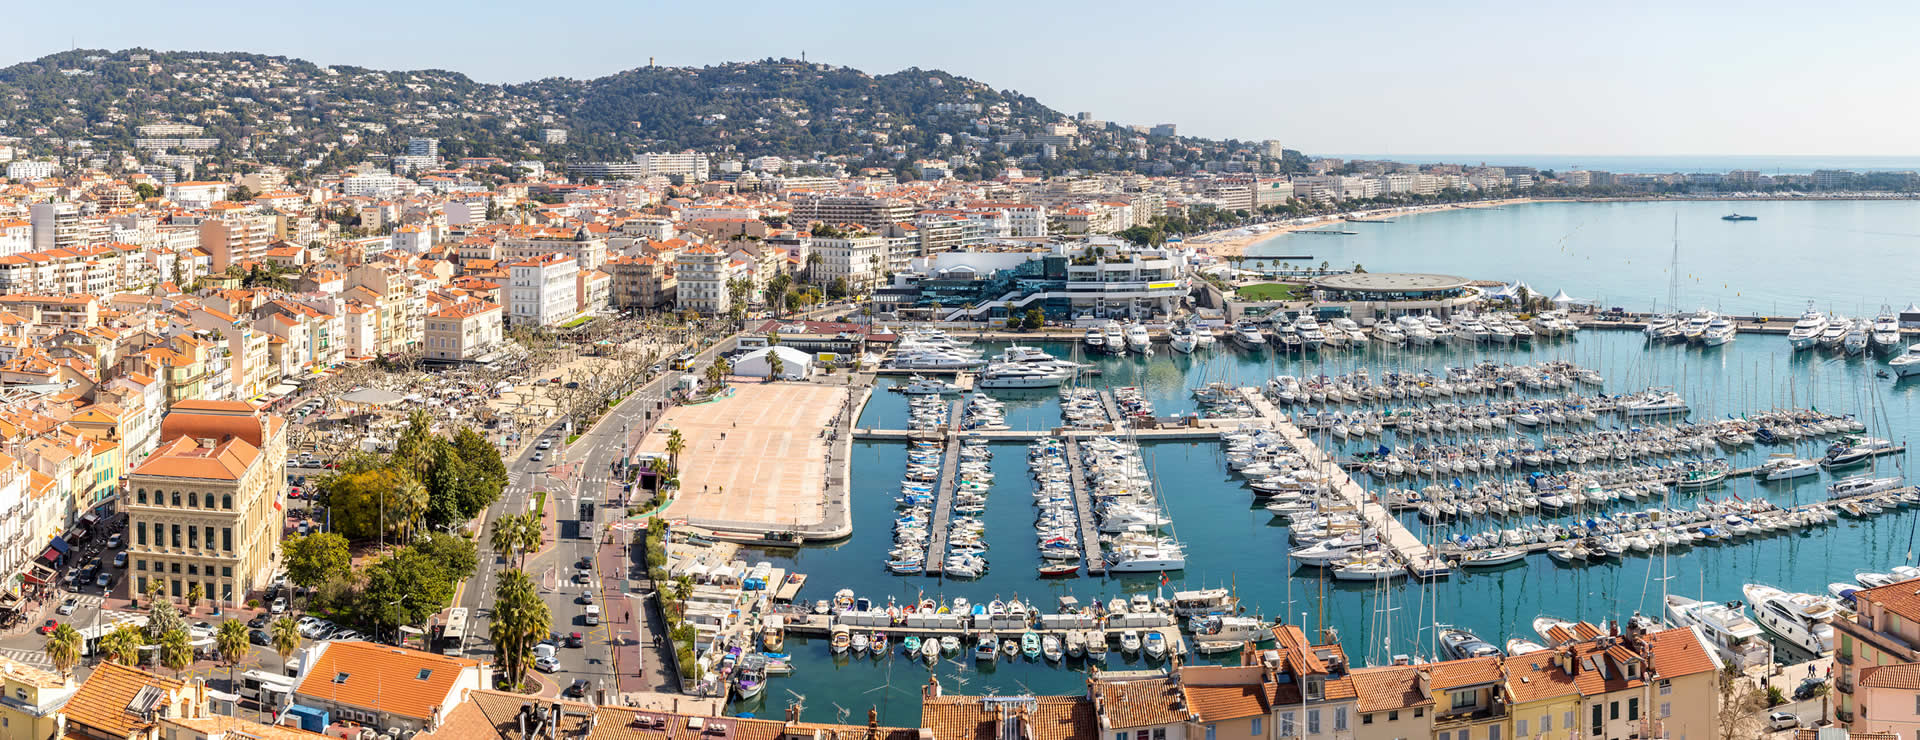 Cannes city and harbor, marina